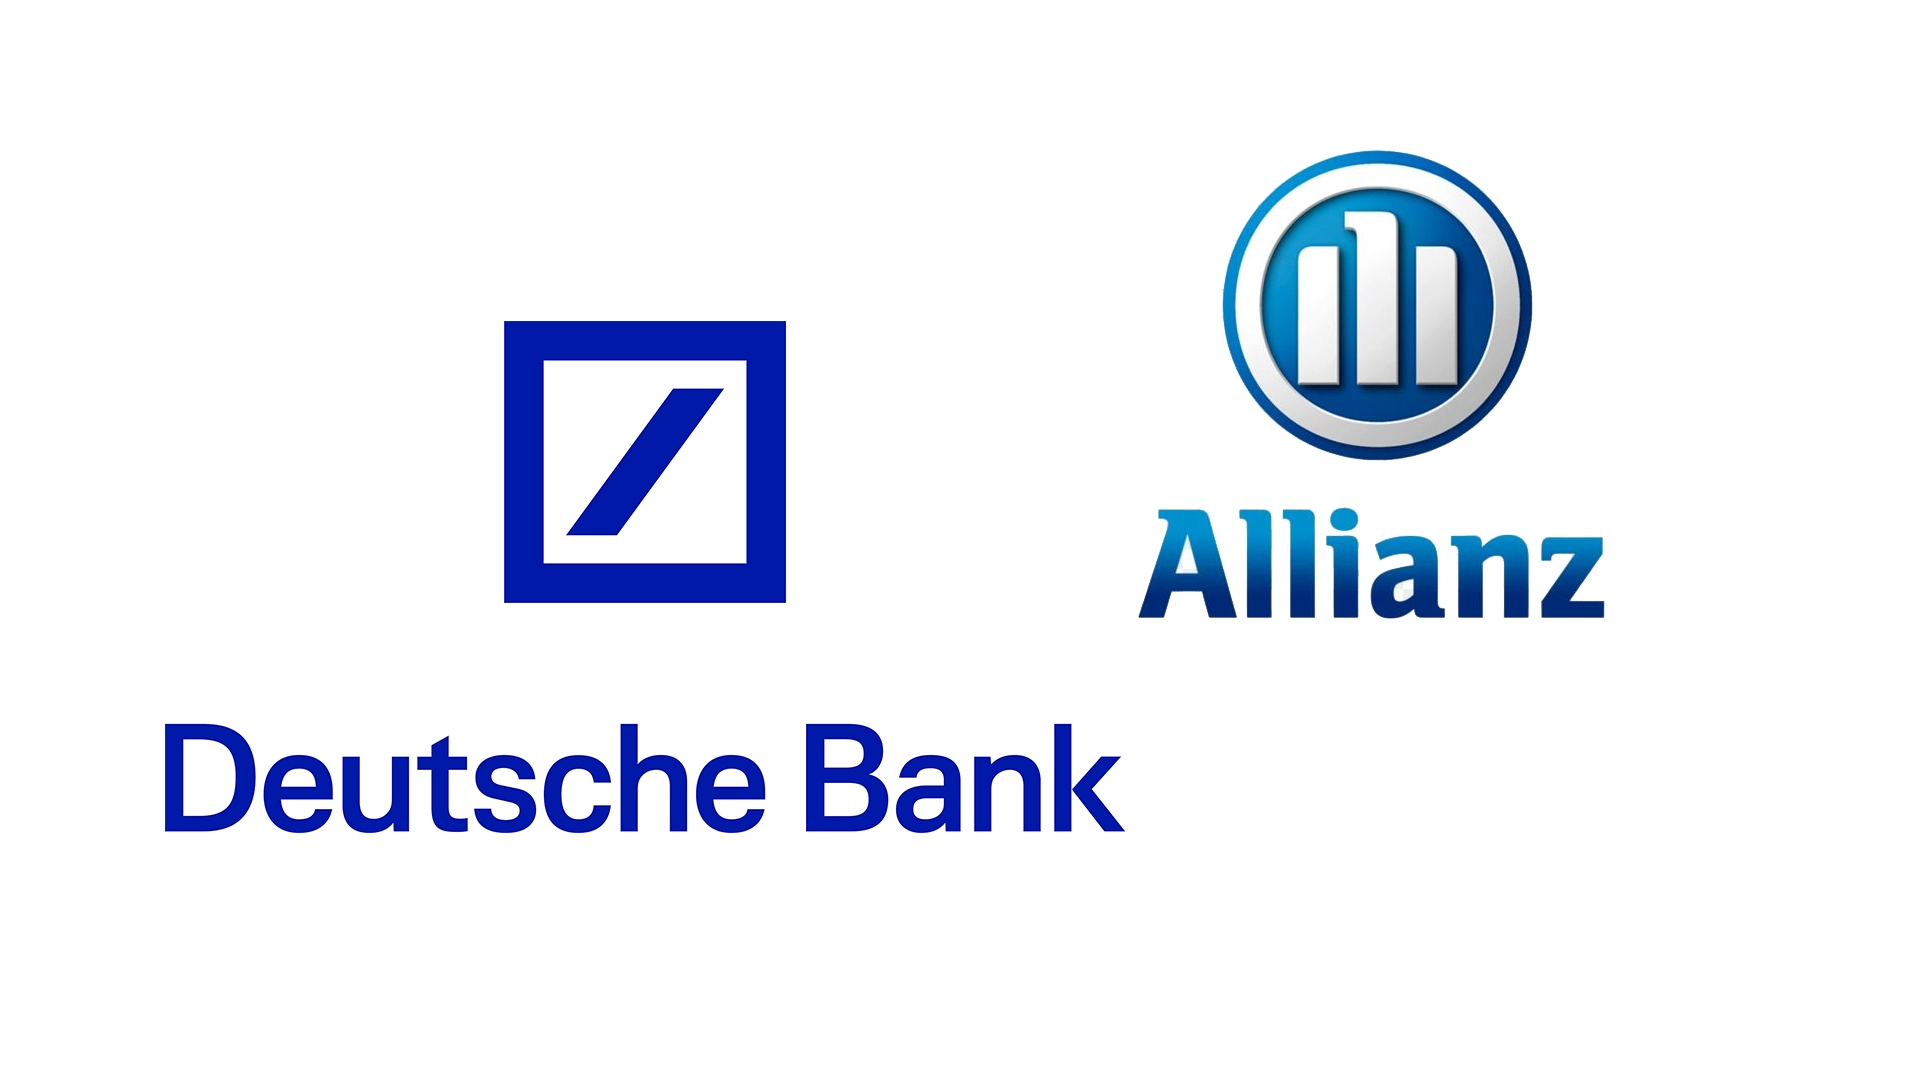 Allianz oder Deutsche Bank: Welche deutsche Finanz&#8209;Aktie ist jetzt unterbewertet? (Foto: Allianz, Deutsche Bank)